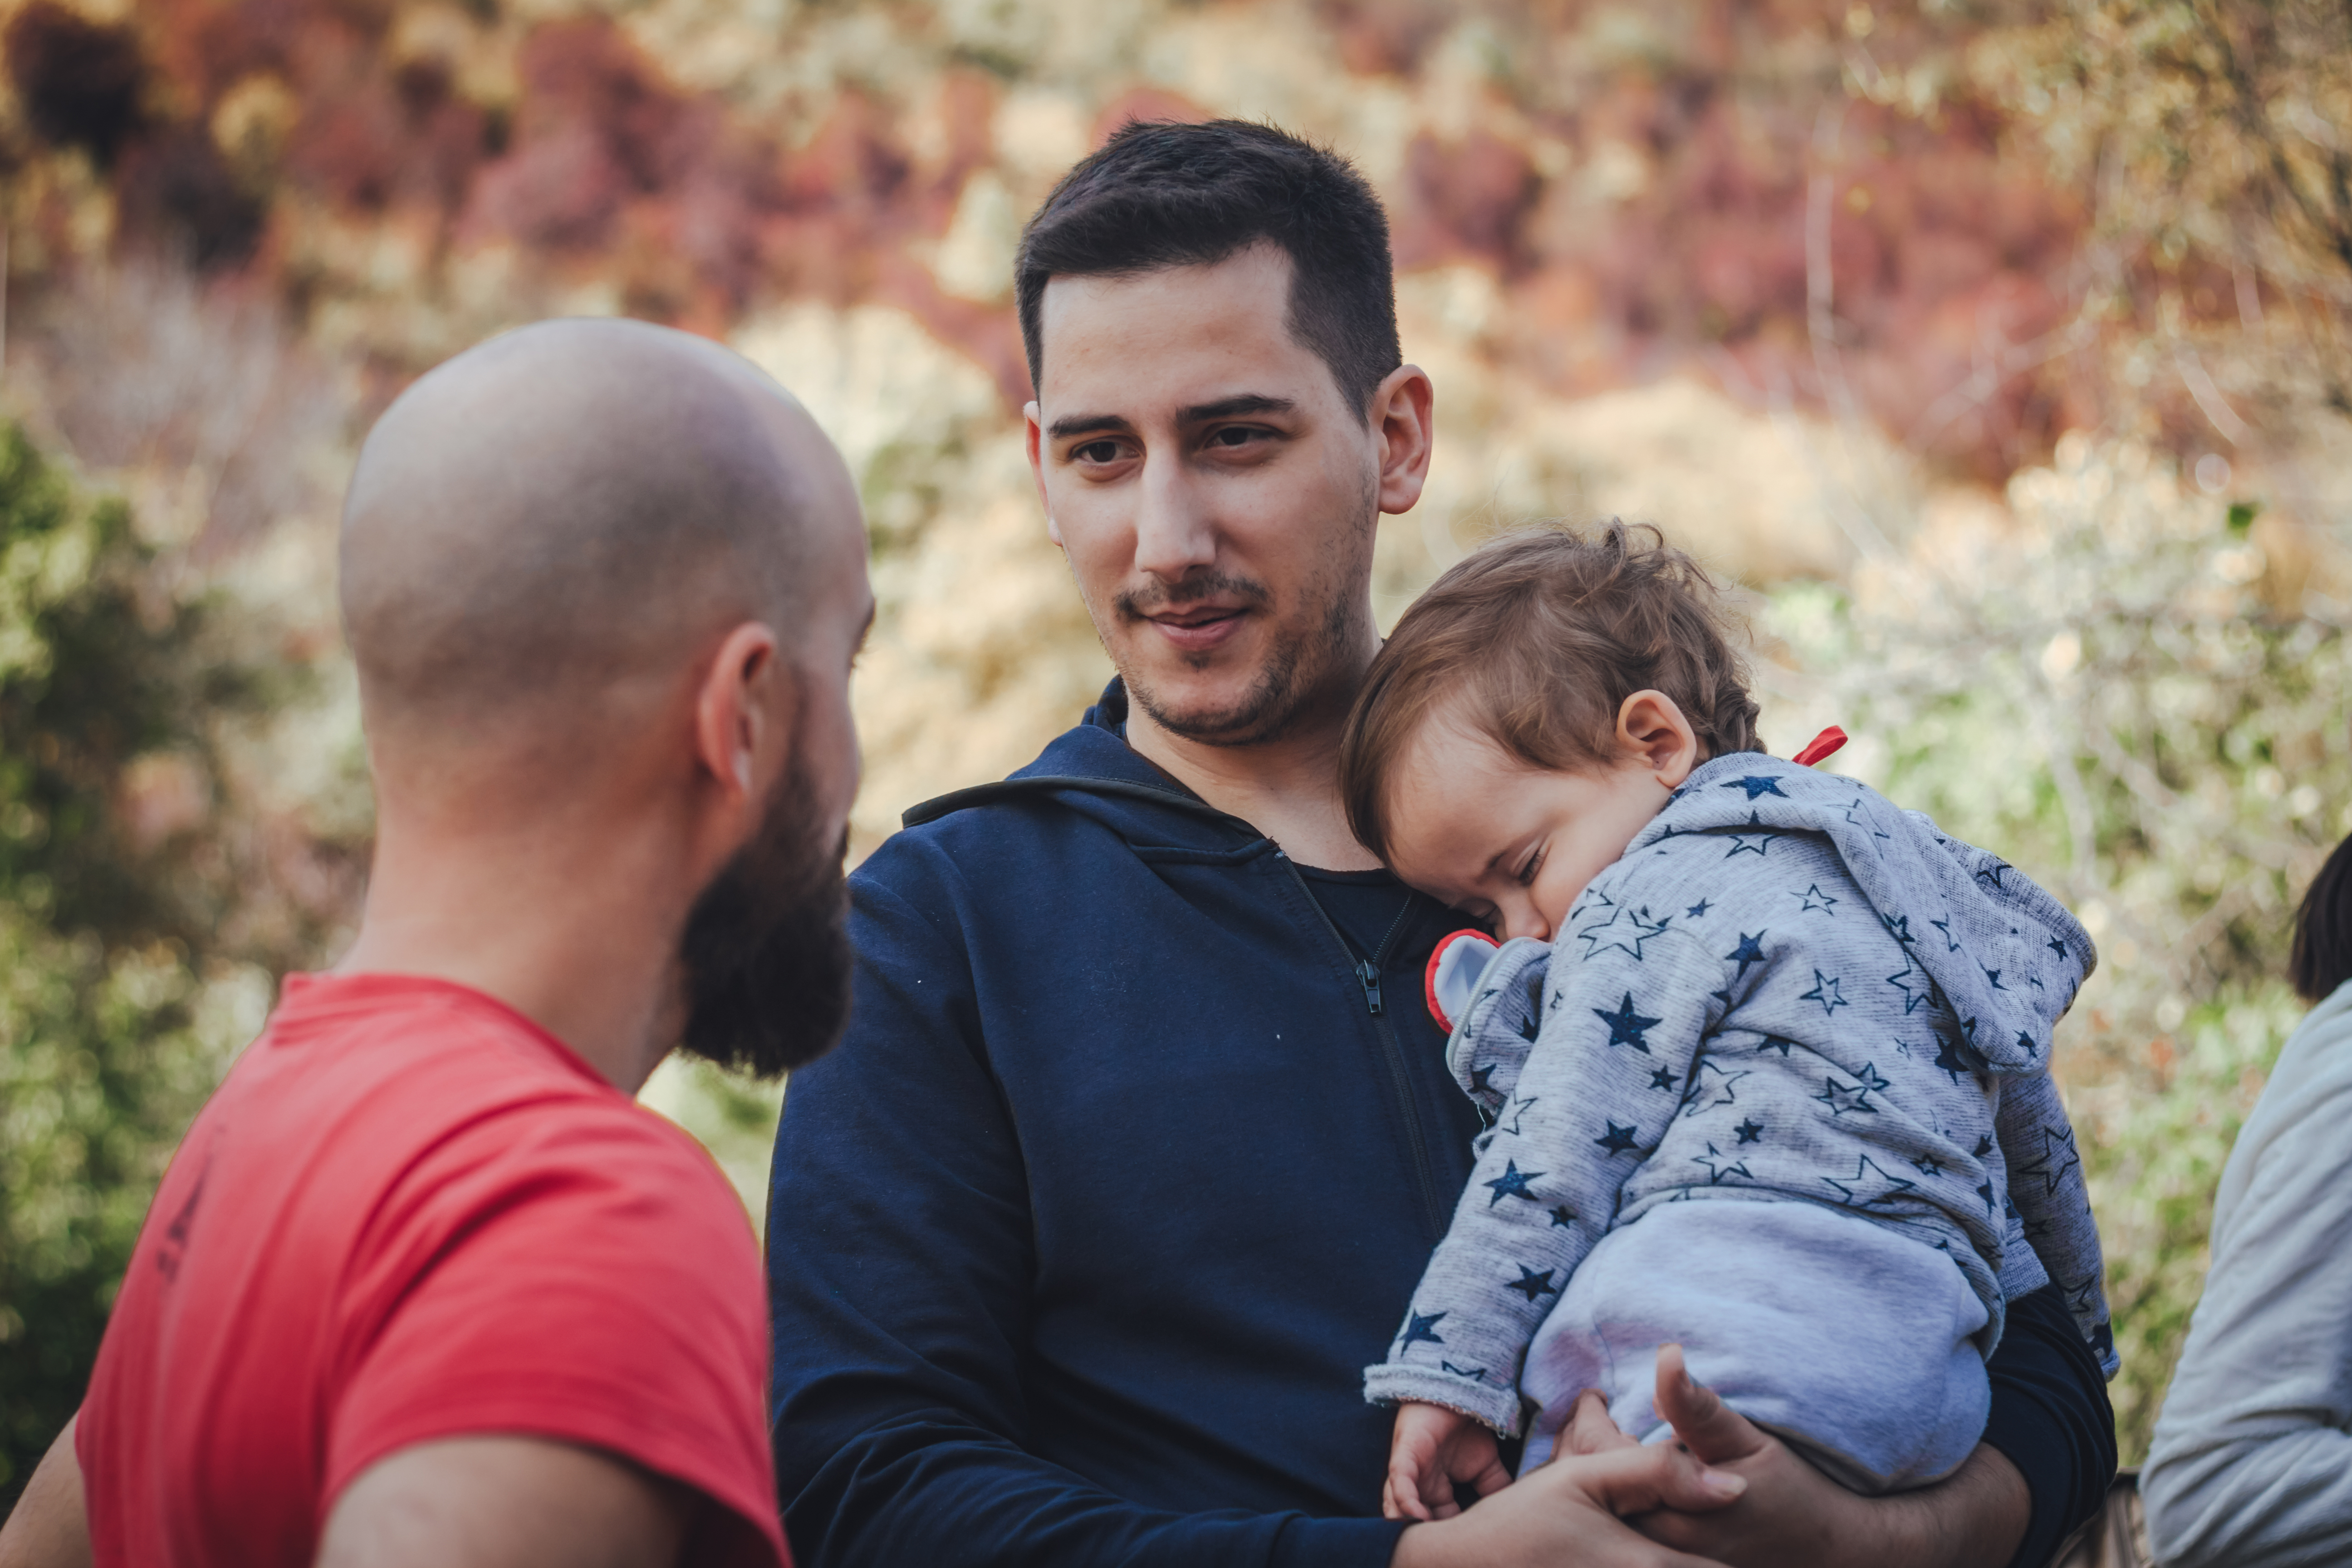 Dos hombres hablando y uno de ellos con un bebé en brazos | Foto: Shutterstock